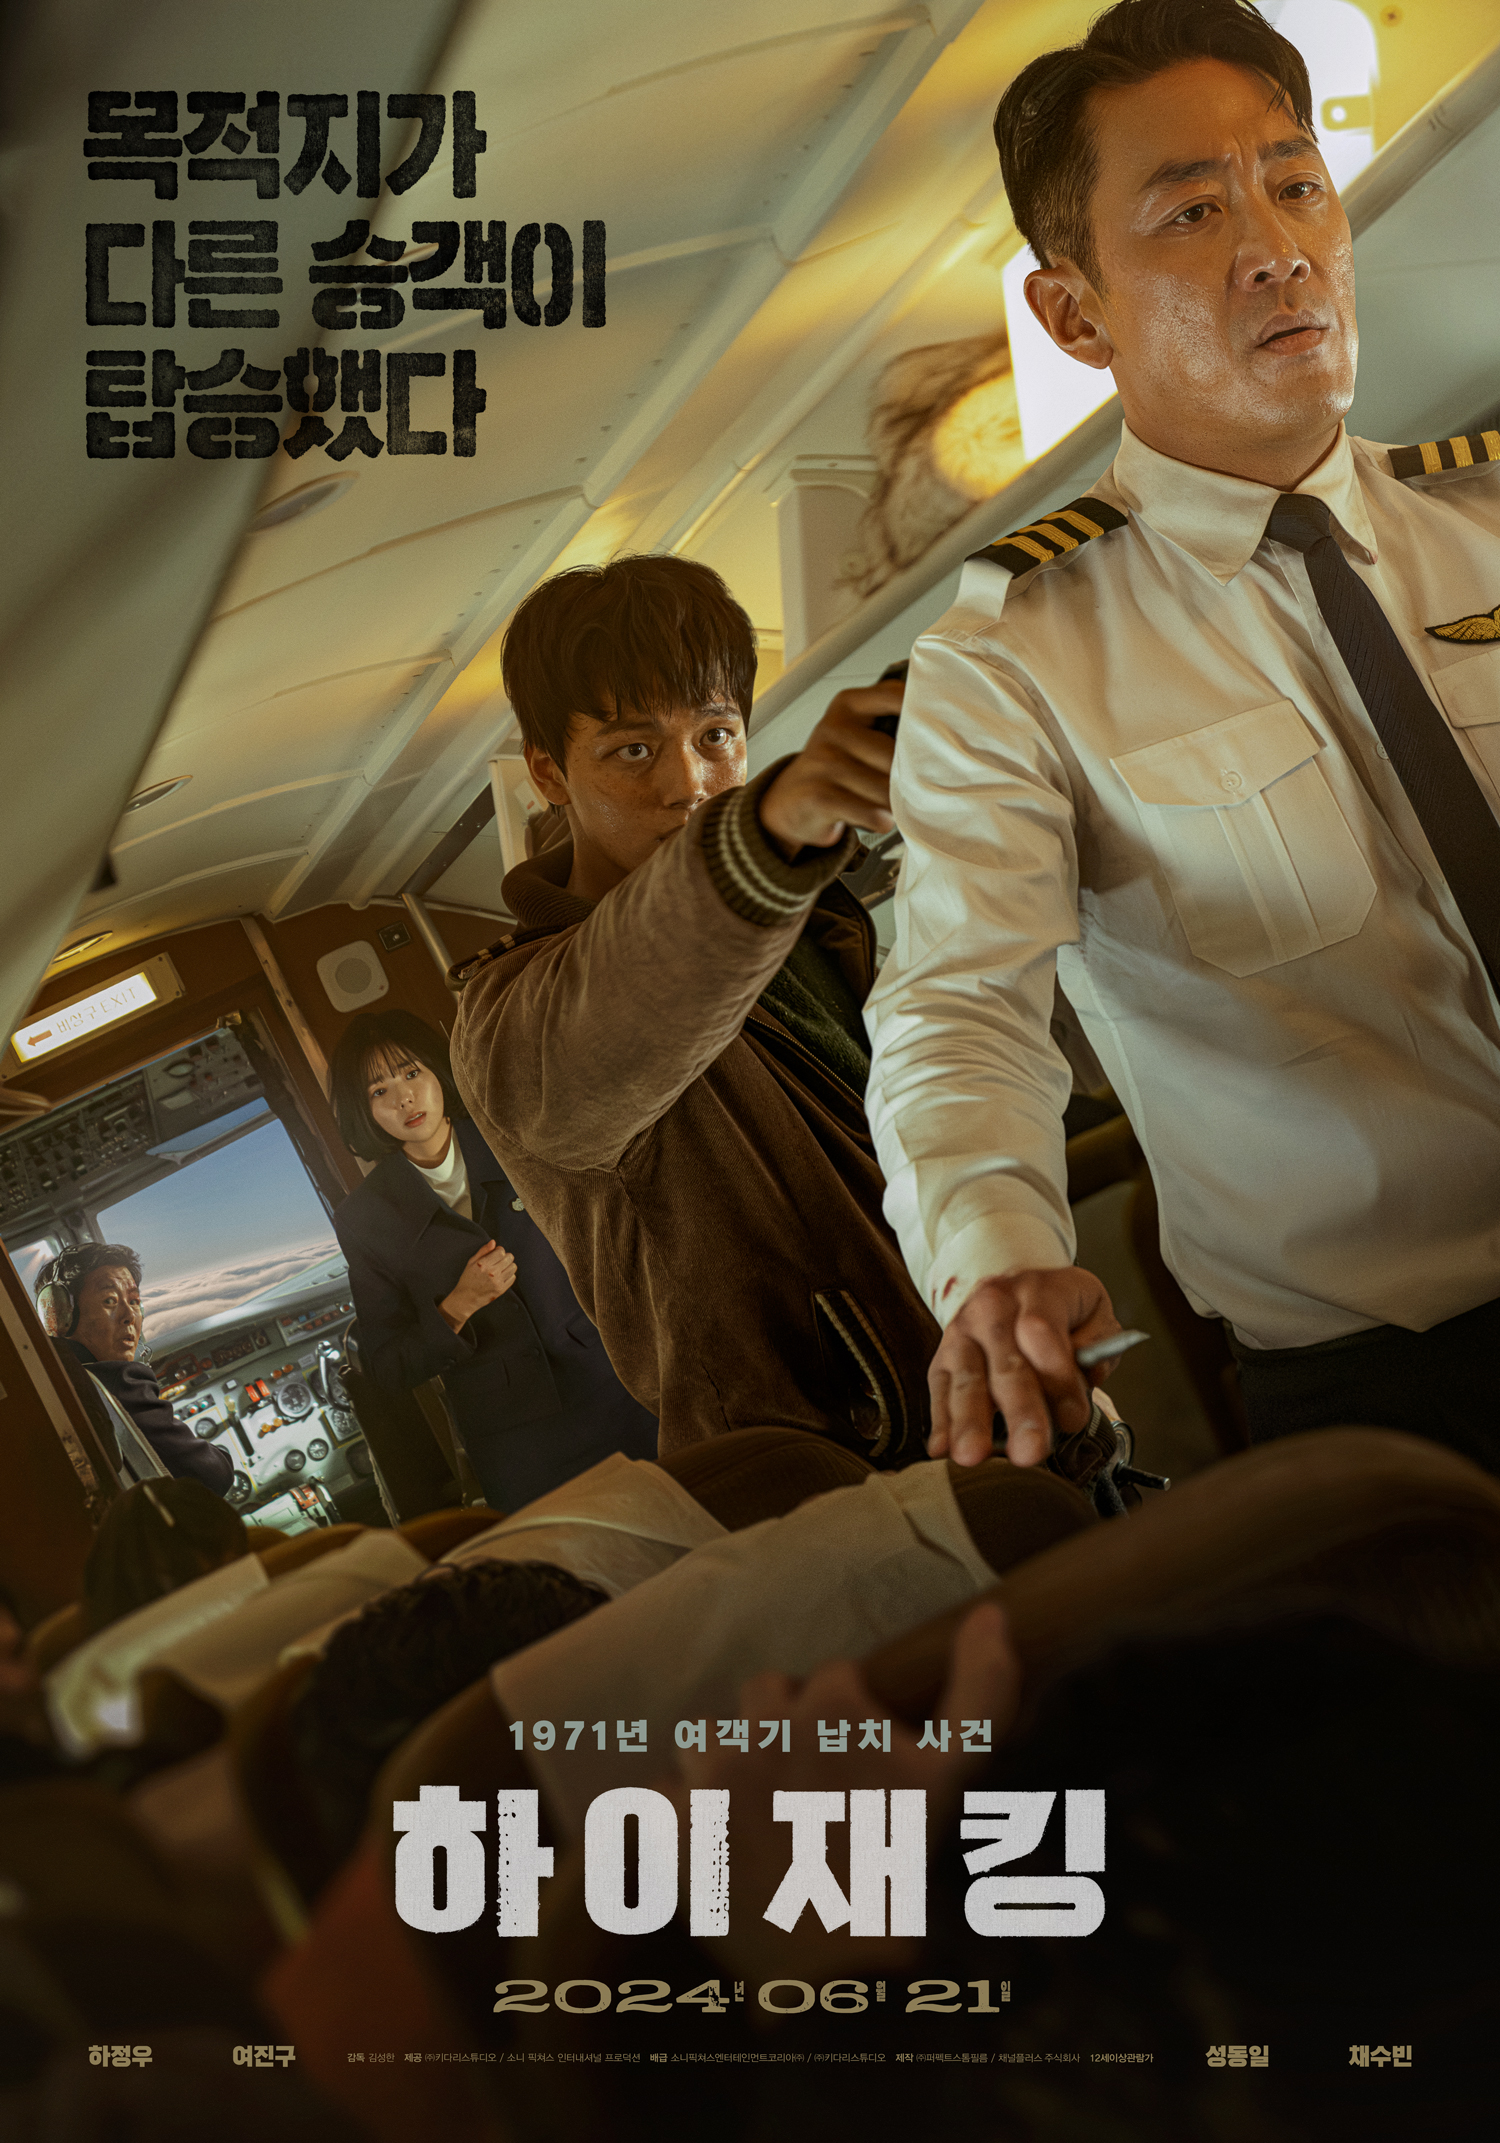 재난 영화 하이재킹 1주차 특전 실물 CGV TTT 4DX 배우 싸인 인쇄 포스터 아트카드 스페셜 티켓